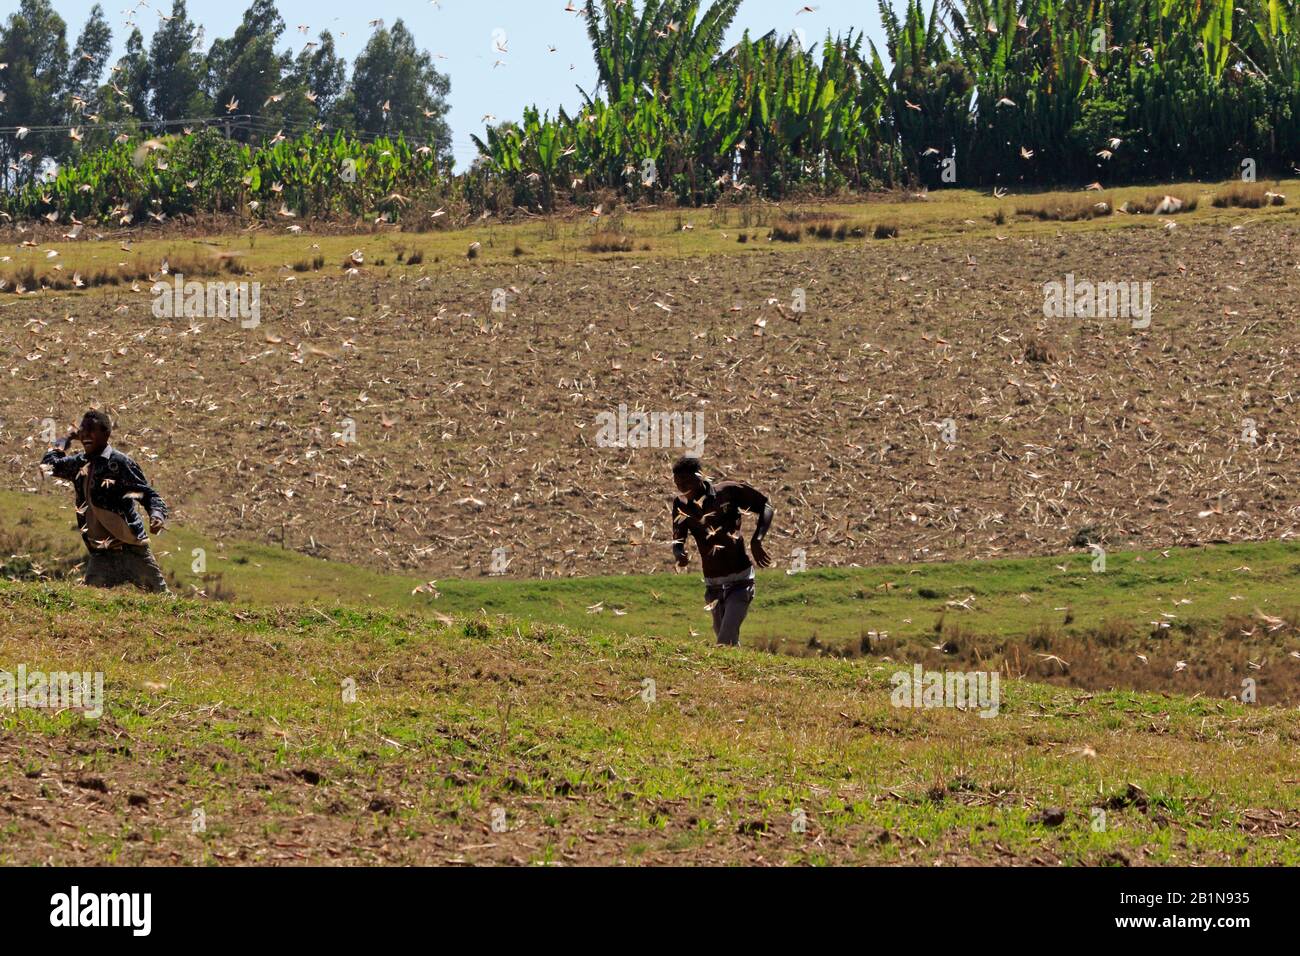 Plaga de langostas del desierto siendo perseguida por dos niños en 2020 Etiopía Foto de stock